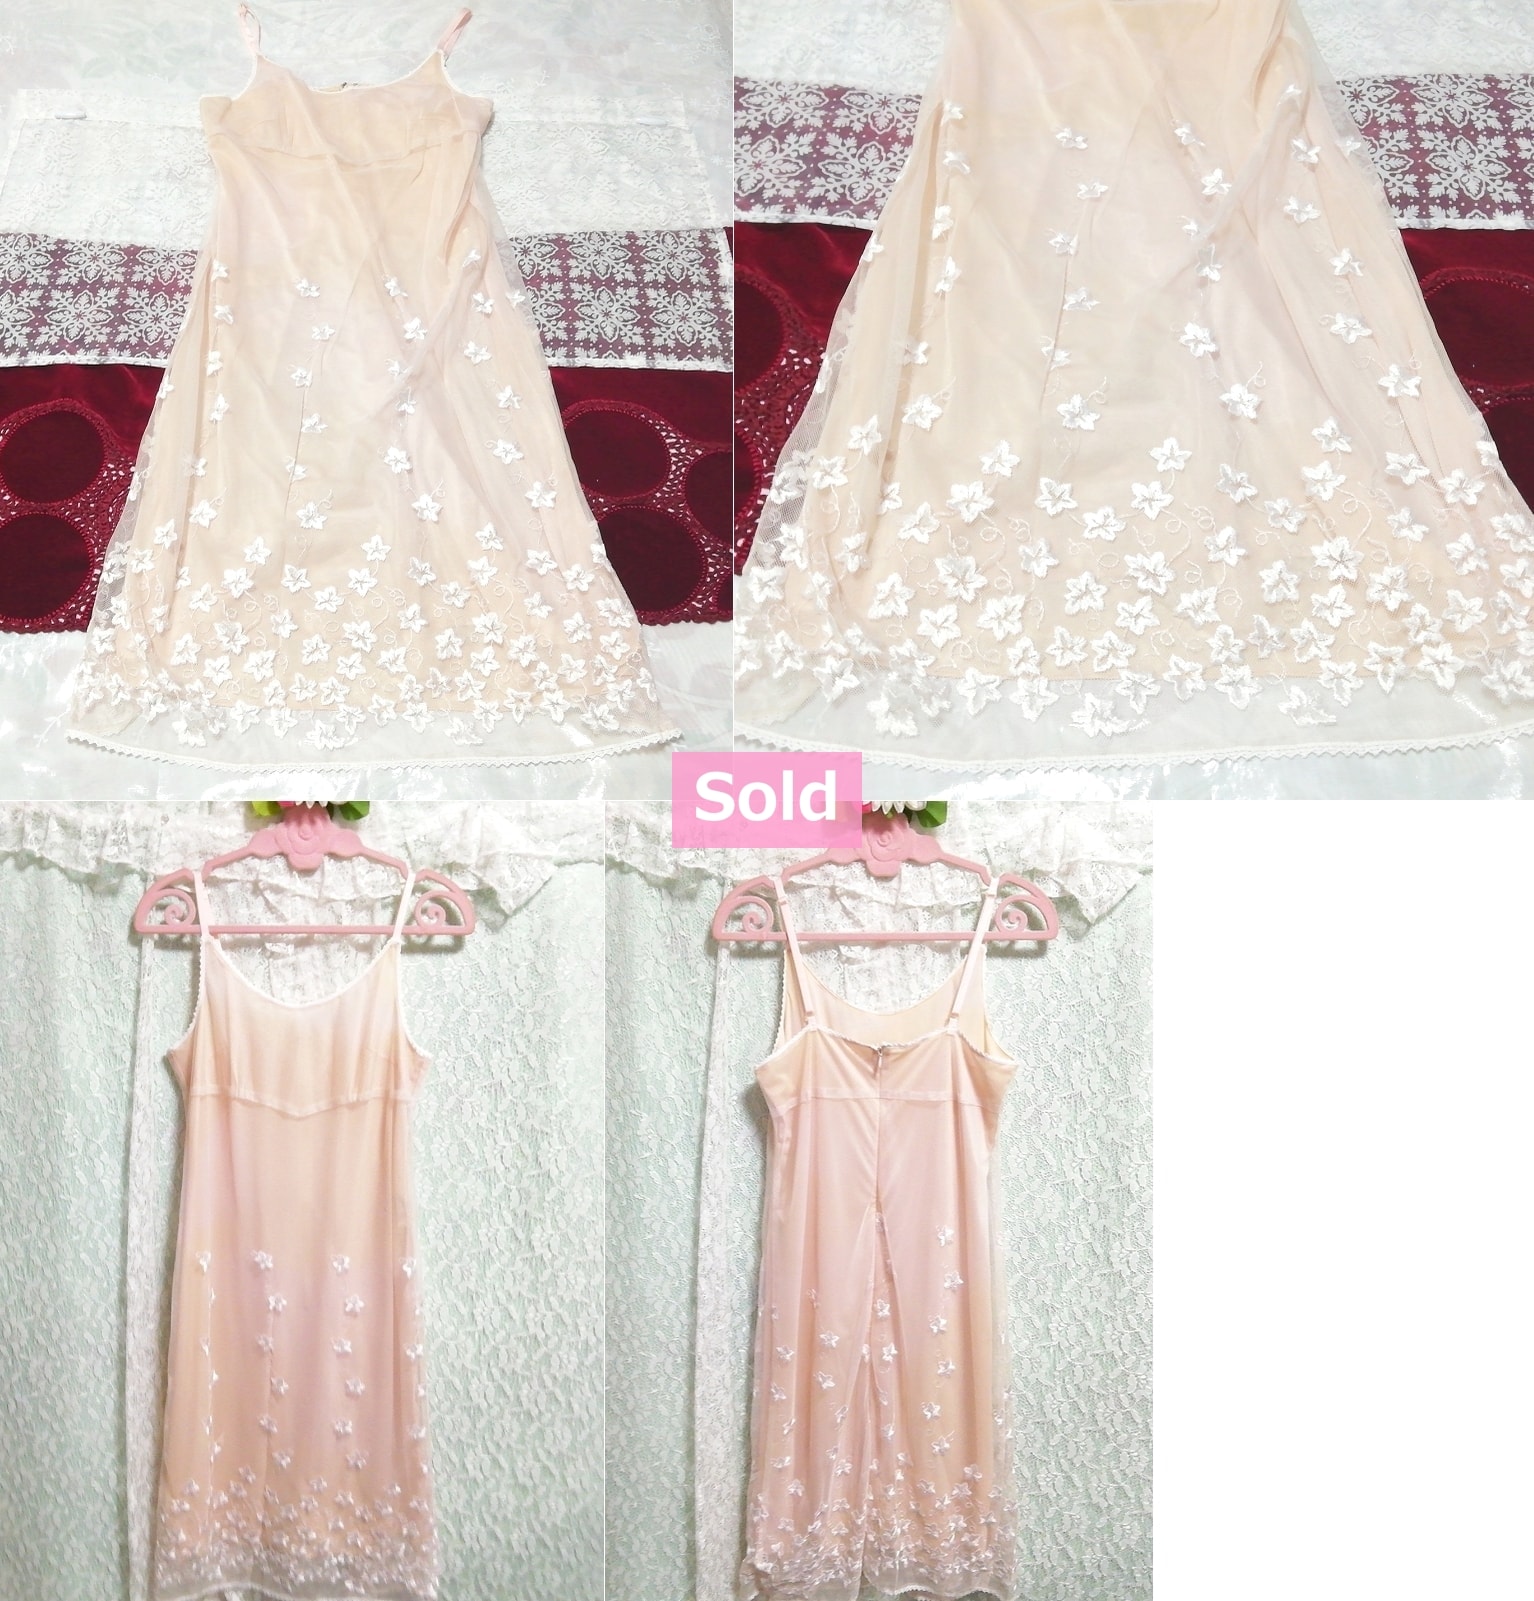 Vestido babydoll camisola camisón de encaje con bordado de flores rosa y blanco, moda, moda para damas, camisola